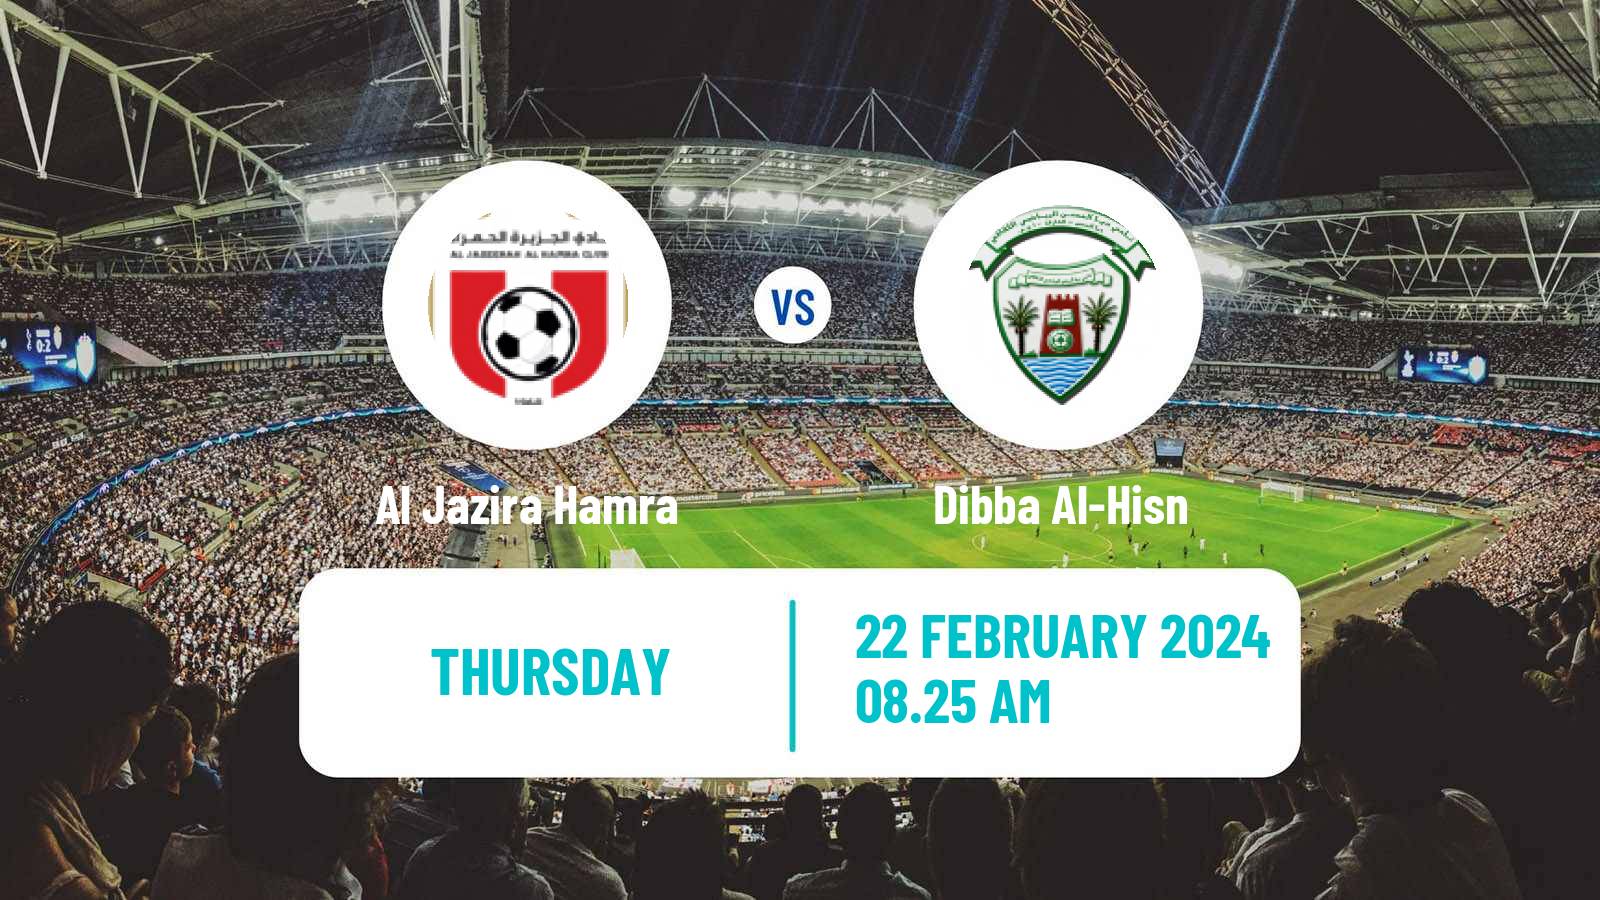 Soccer UAE Division 1 Al Jazira Hamra - Dibba Al-Hisn